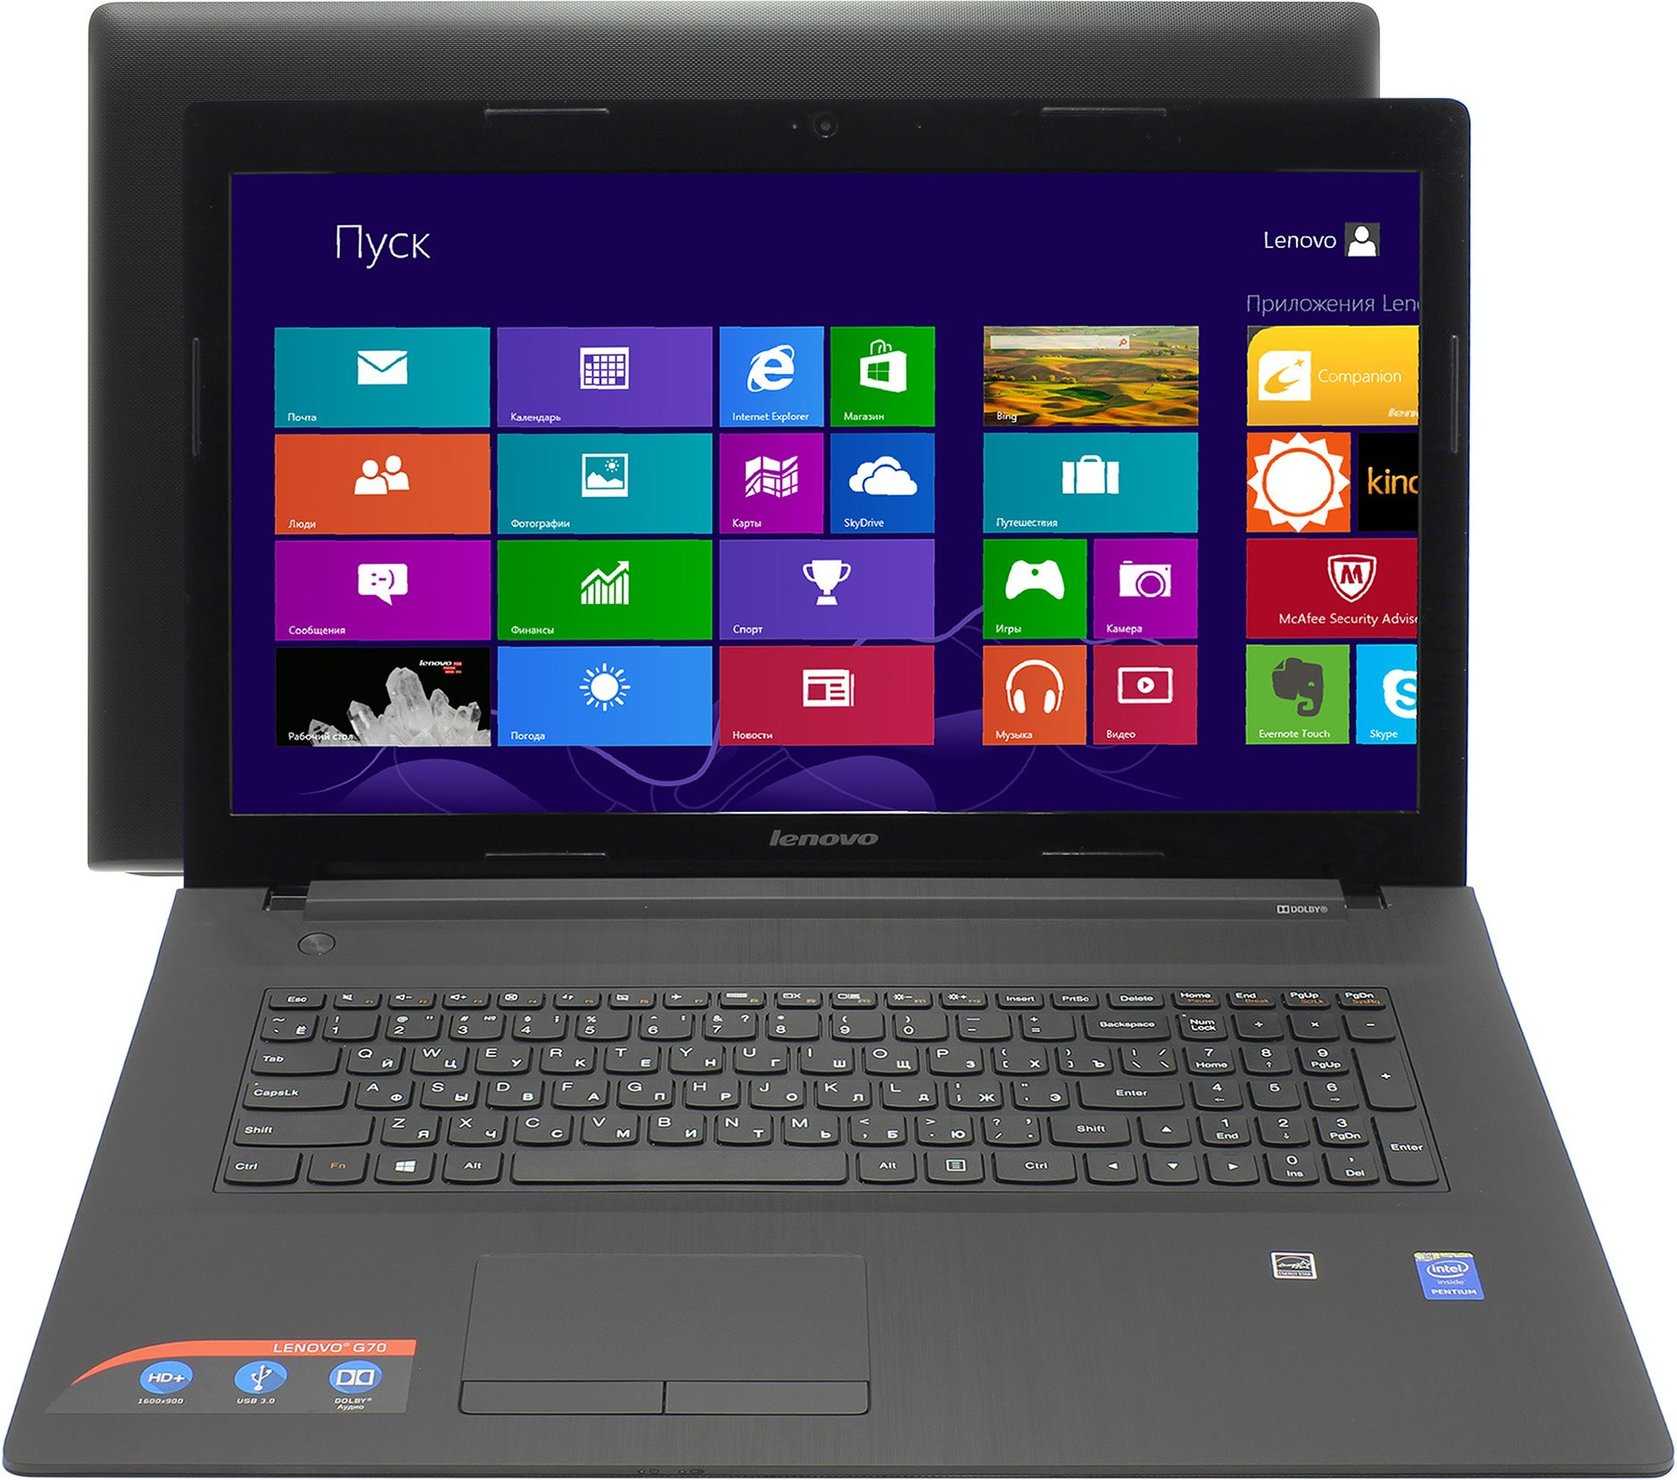 Ноутбук lenovo g70-80 (80ff004srk) — купить, цена и характеристики, отзывы